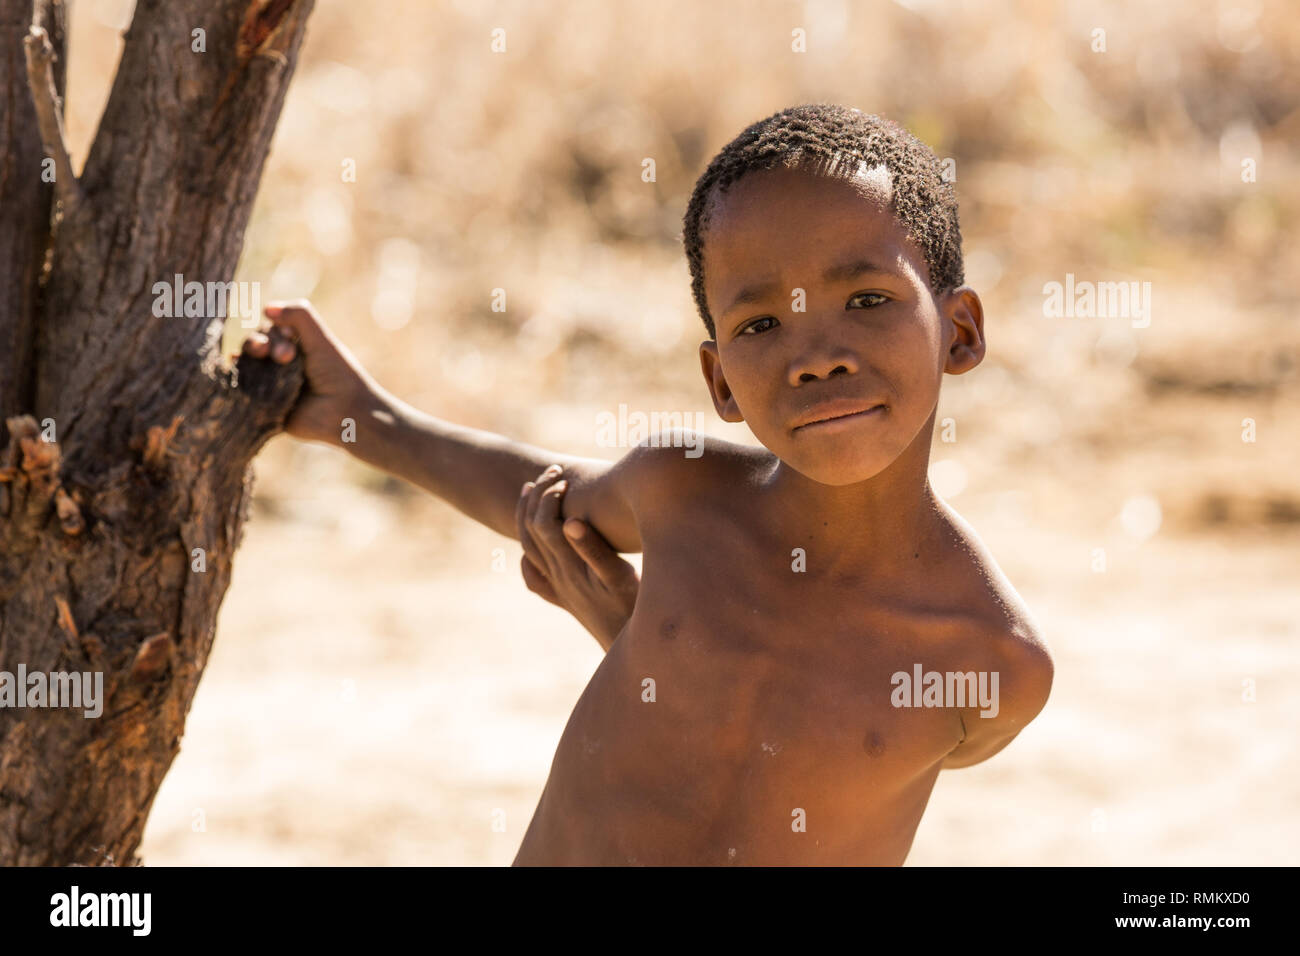 Retrato de un niño bosquimano. Fotografiado en Namibia Foto de stock